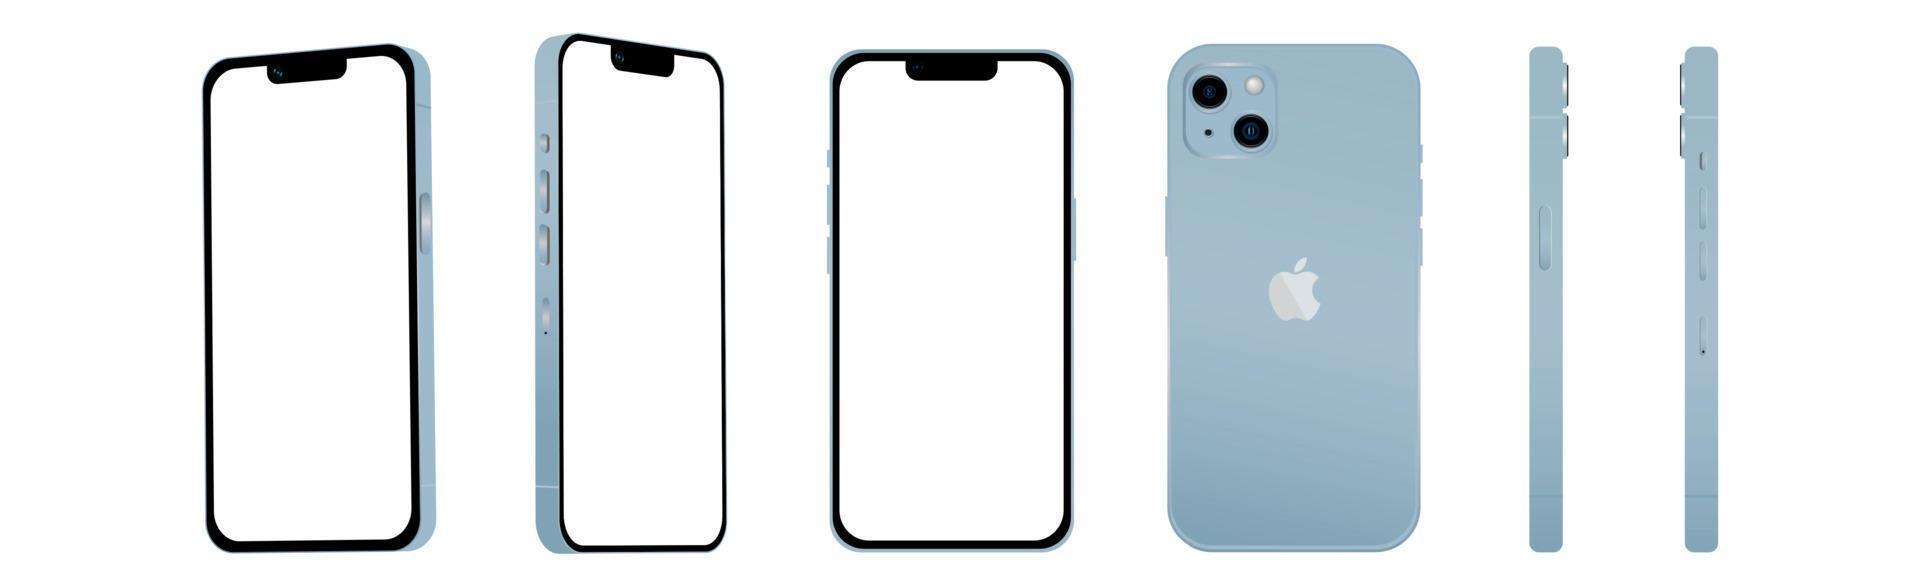 conjunto de 6 pcs ângulos diferentes, modelo roxo smartphone apple iphone 14, novidade da indústria de ti, maquete para web design em um fundo branco - vetor